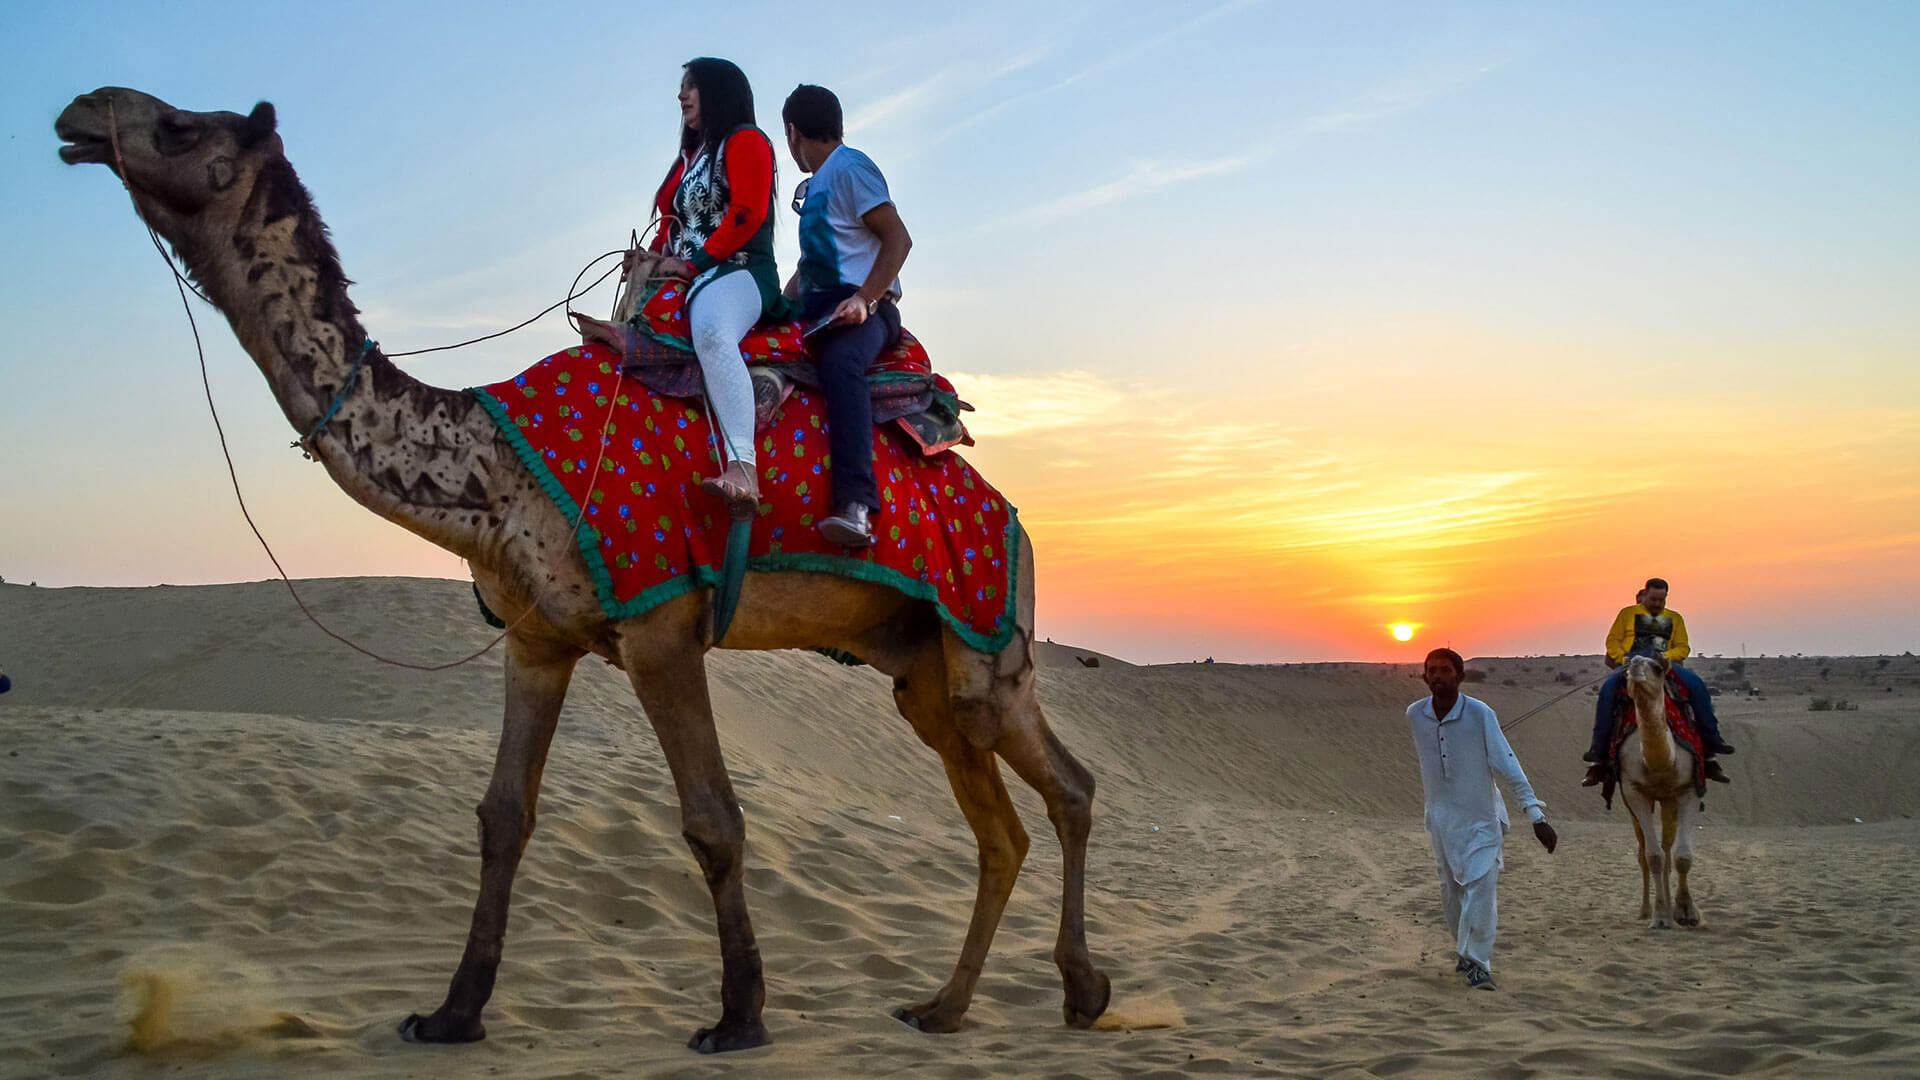 Jaisalmer Desert Festival 2021